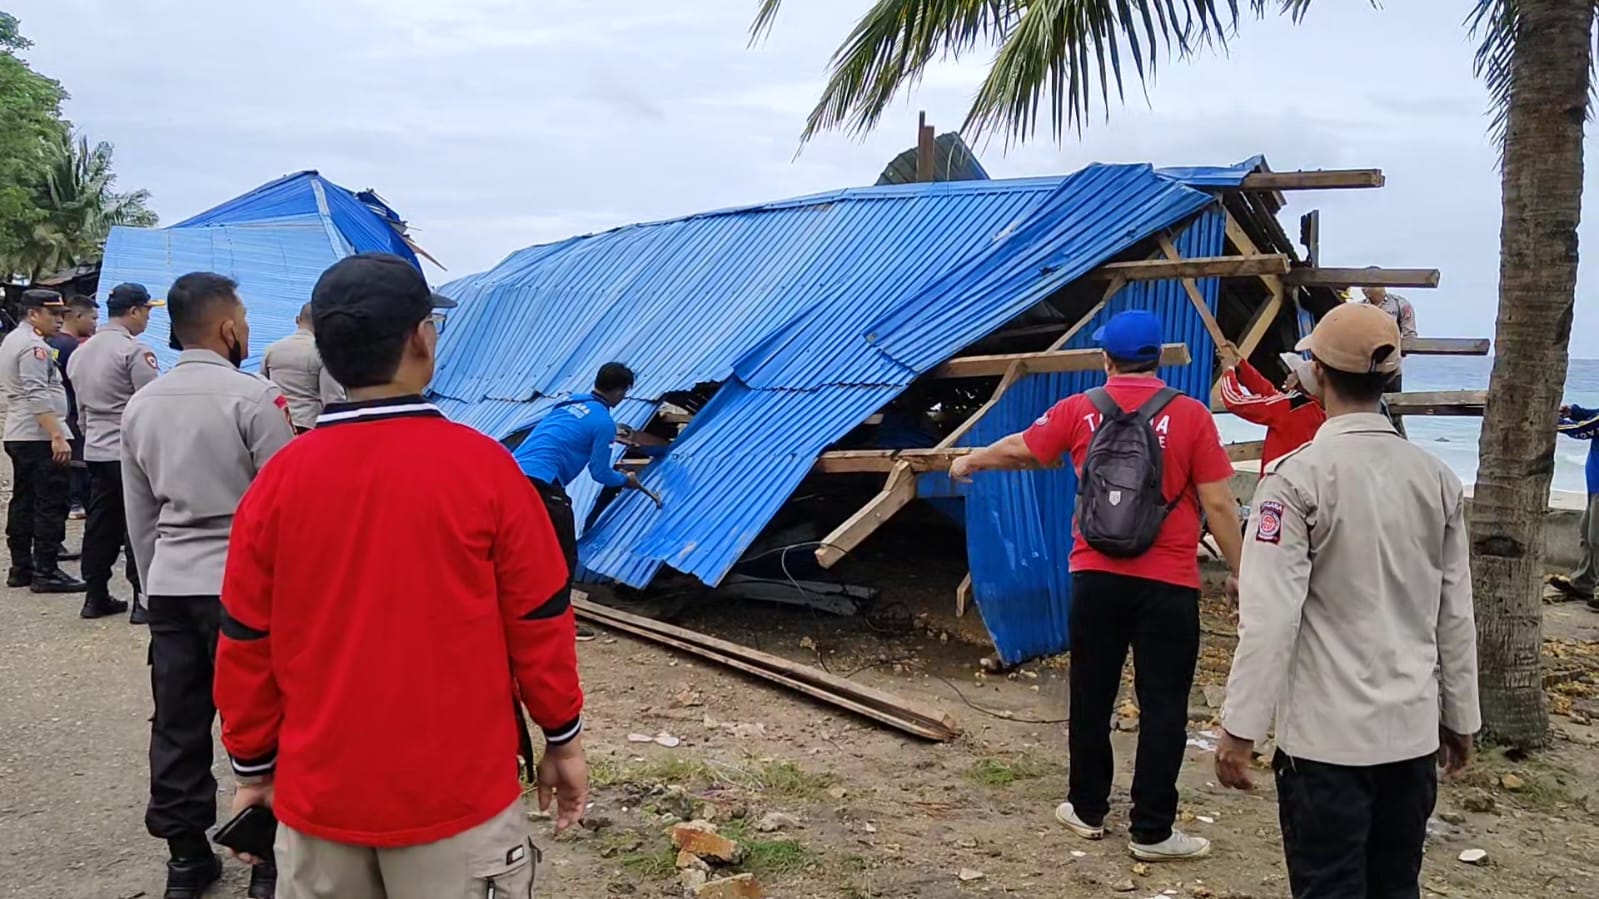 Sejumlah lapak jualan _Parende_ (makanan khas Buton) di sekitar Pasar Wameo Kota Baubau, Sulawesi Tenggara (Sultra) rusak parah akibat dihantam cuaca ekstrem yang terjadi pada Sabtu malam hingga 25 Desember dini hari. (Foto Darno Ufatma)